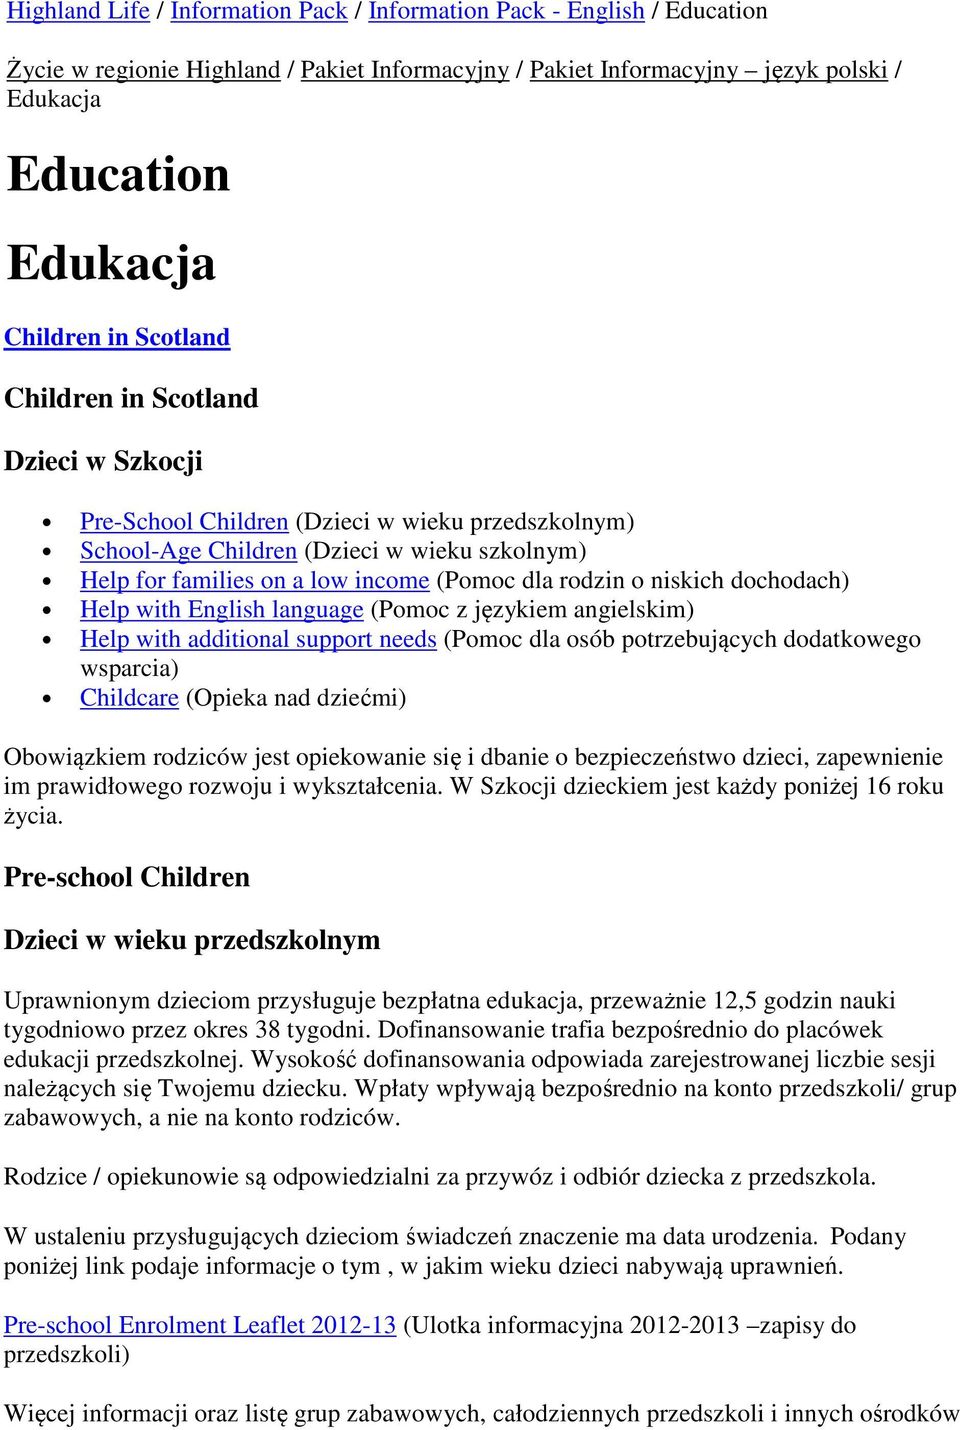 niskich dochodach) Help with English language (Pomoc z językiem angielskim) Help with additional support needs (Pomoc dla osób potrzebujących dodatkowego wsparcia) Childcare (Opieka nad dziećmi)